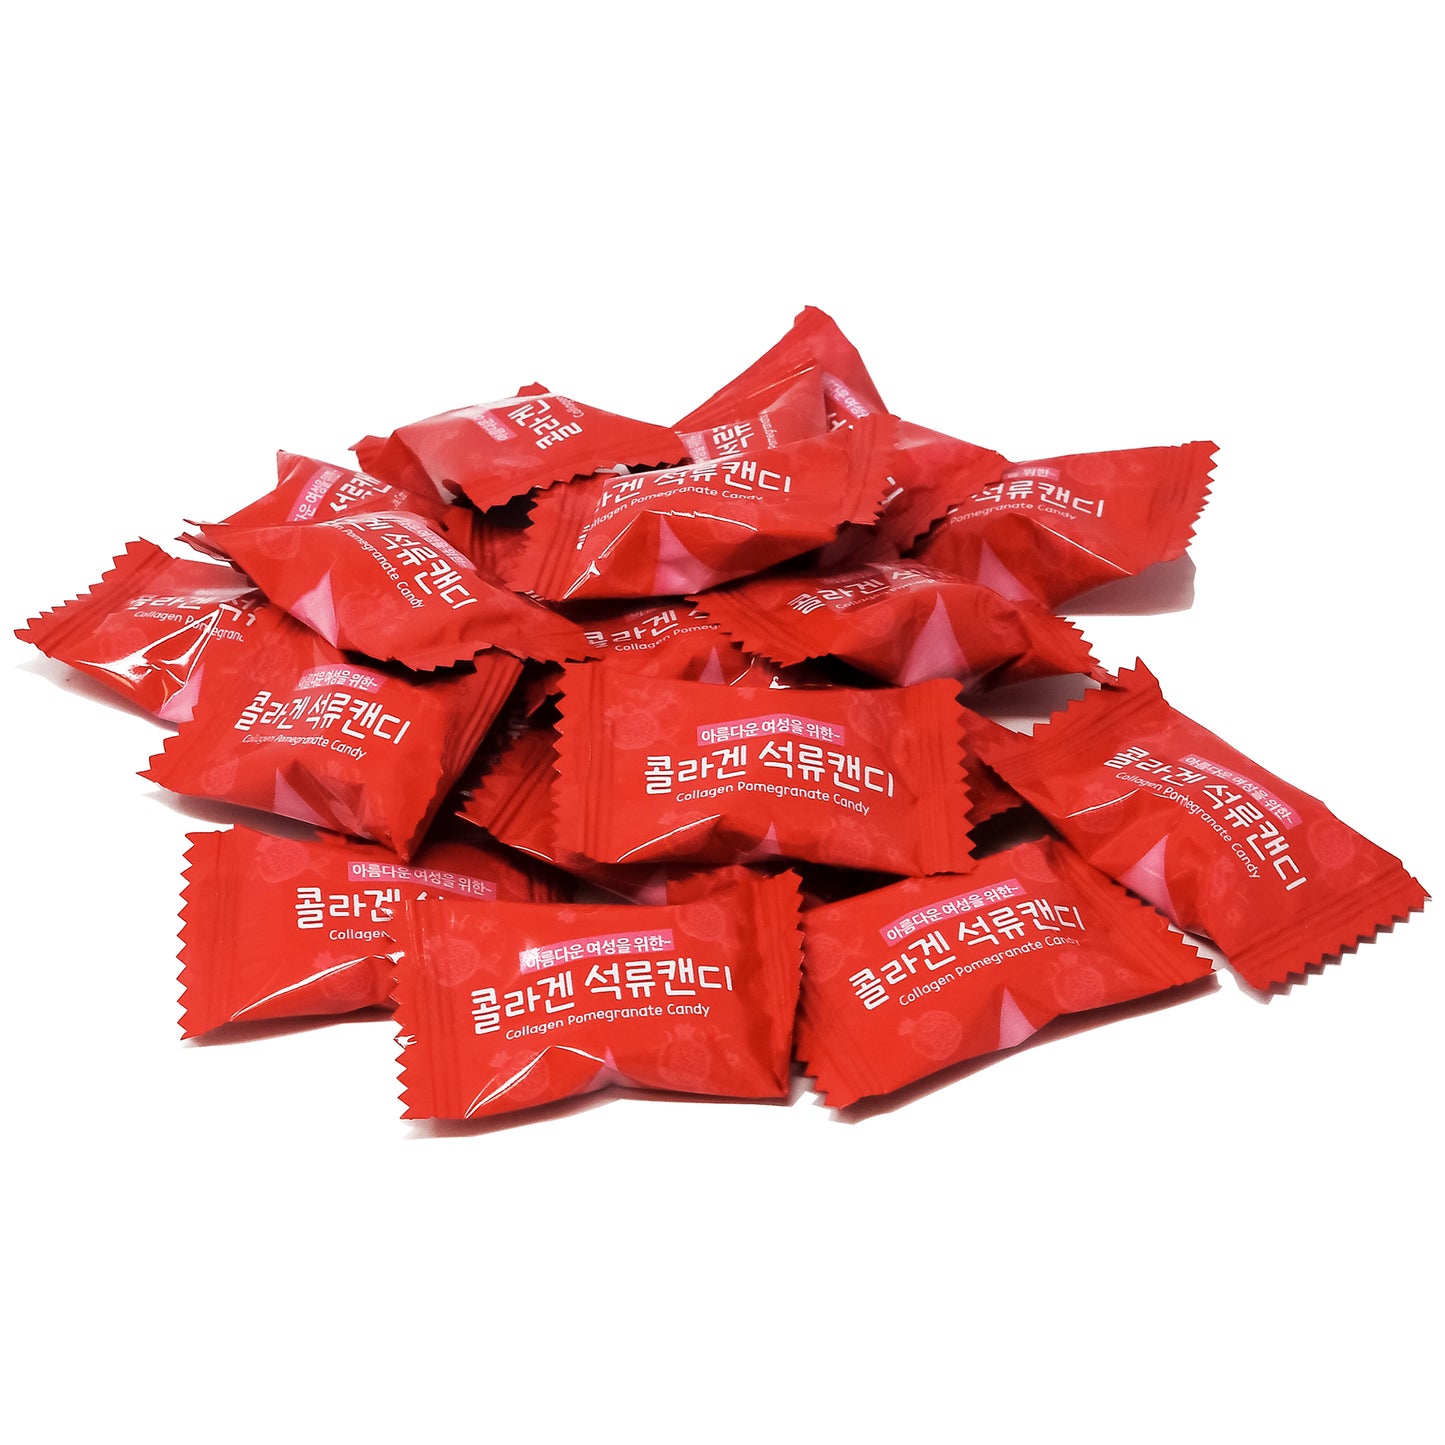 KOREAN  COLLAGEN POMEGRANATE Candy 8.81oz (250g)   X 2, 3, 4, 5